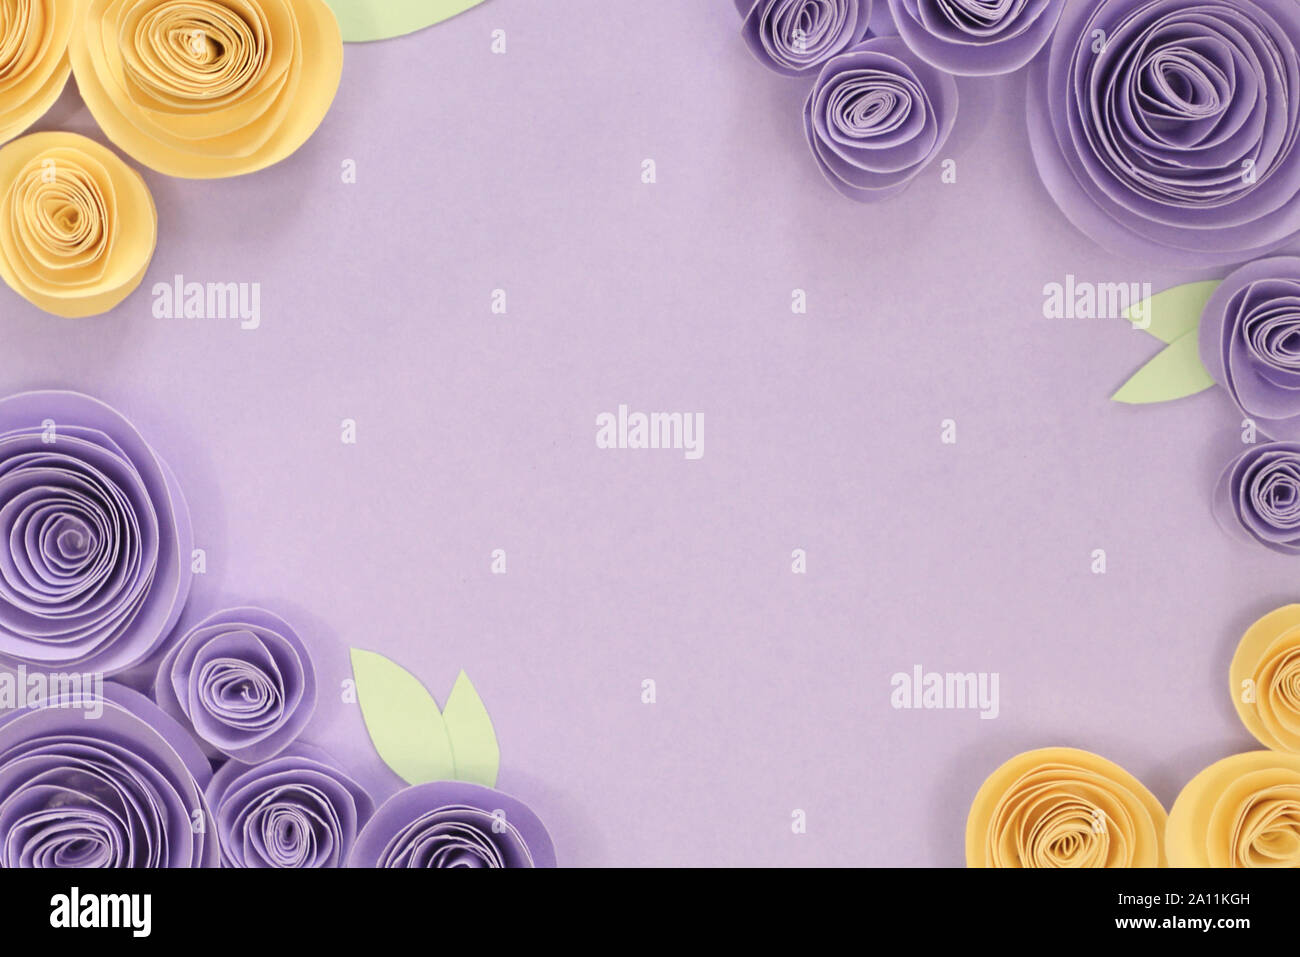 Viola pastello e giallo di carta artigianale di fiori di rose laici piatto sfondo con fiori e foglie su circa il confine e svuotare lo spazio di copia in medio Foto Stock